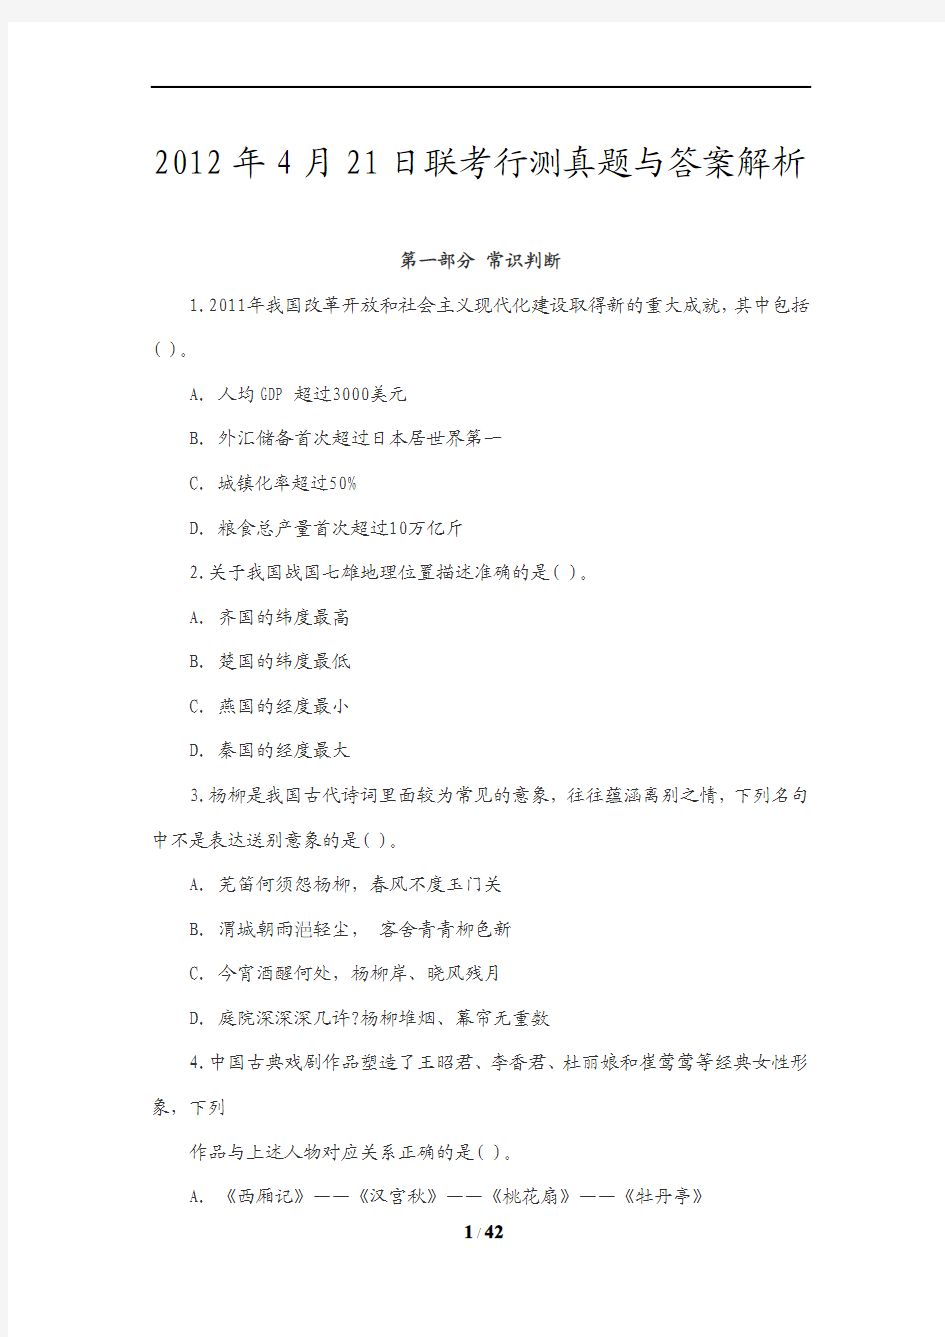 2012年黑龙江省公务员考试行测真题及答案解析(无水印)